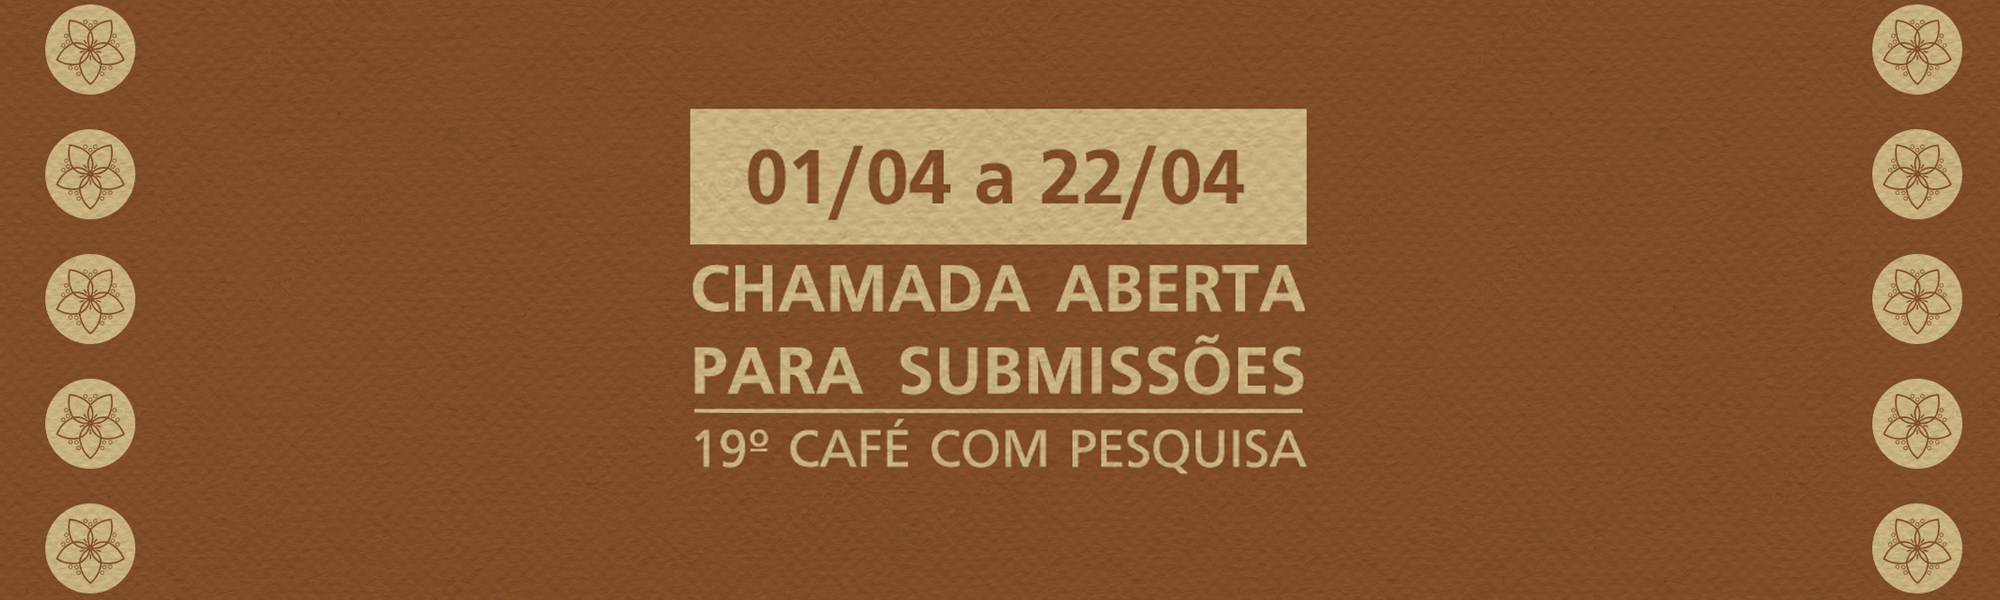 19º Café com Pesquisa recebe inscrição de projetos até 22 de abril